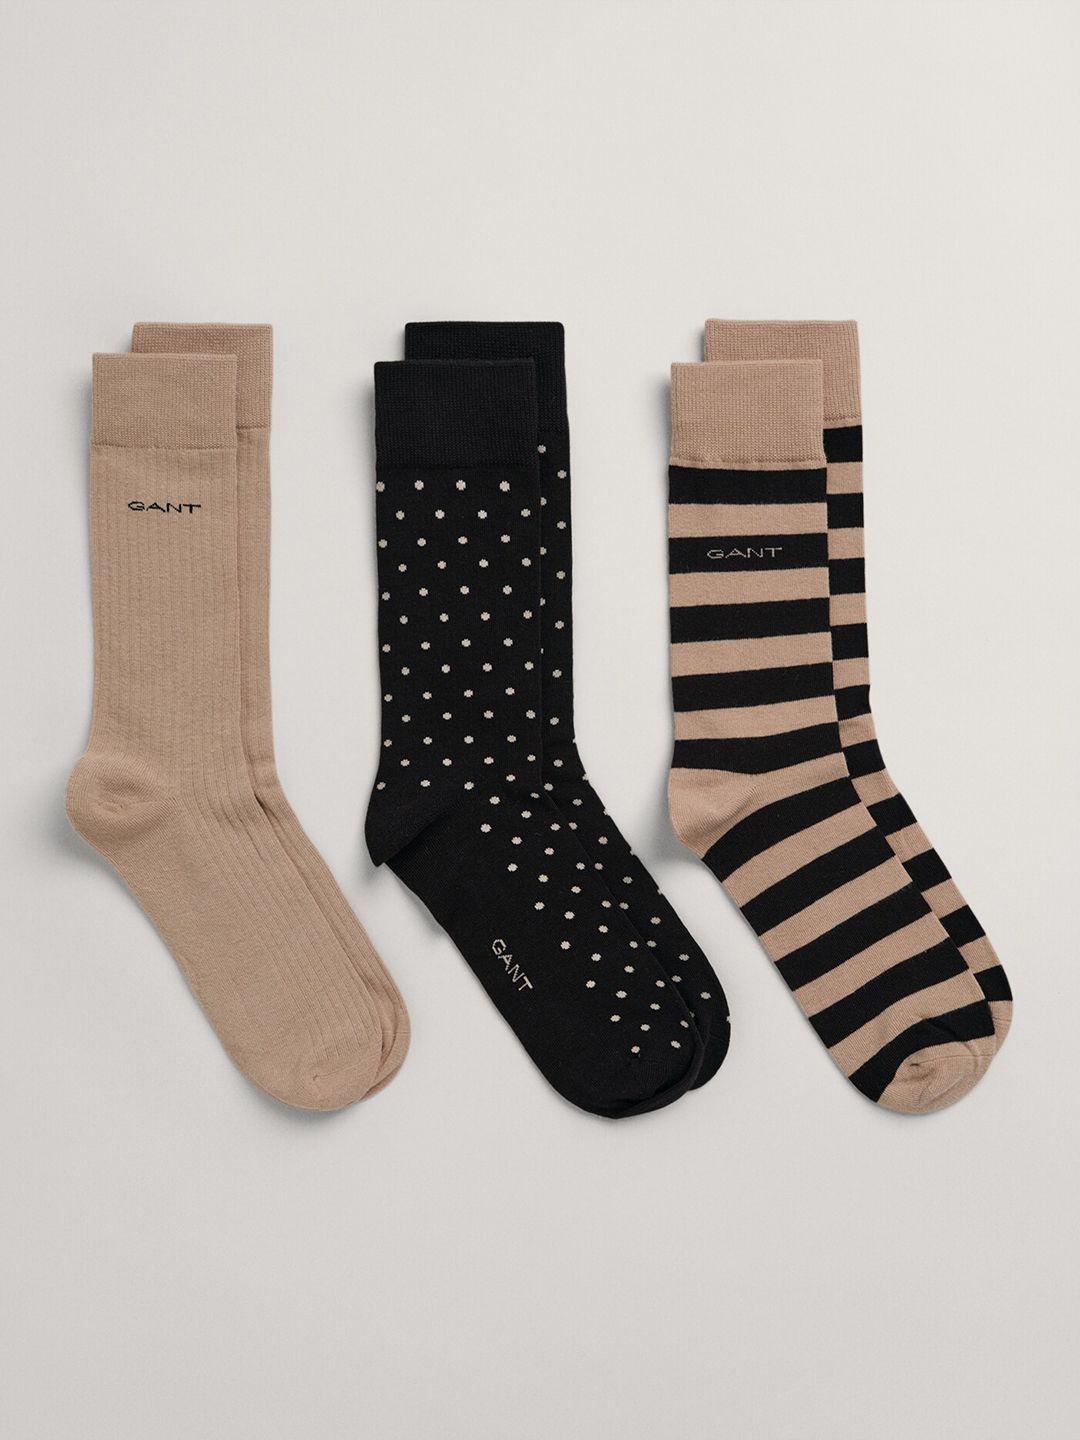 gant-men-pack-of-3-above-ankle-length-printed-socks